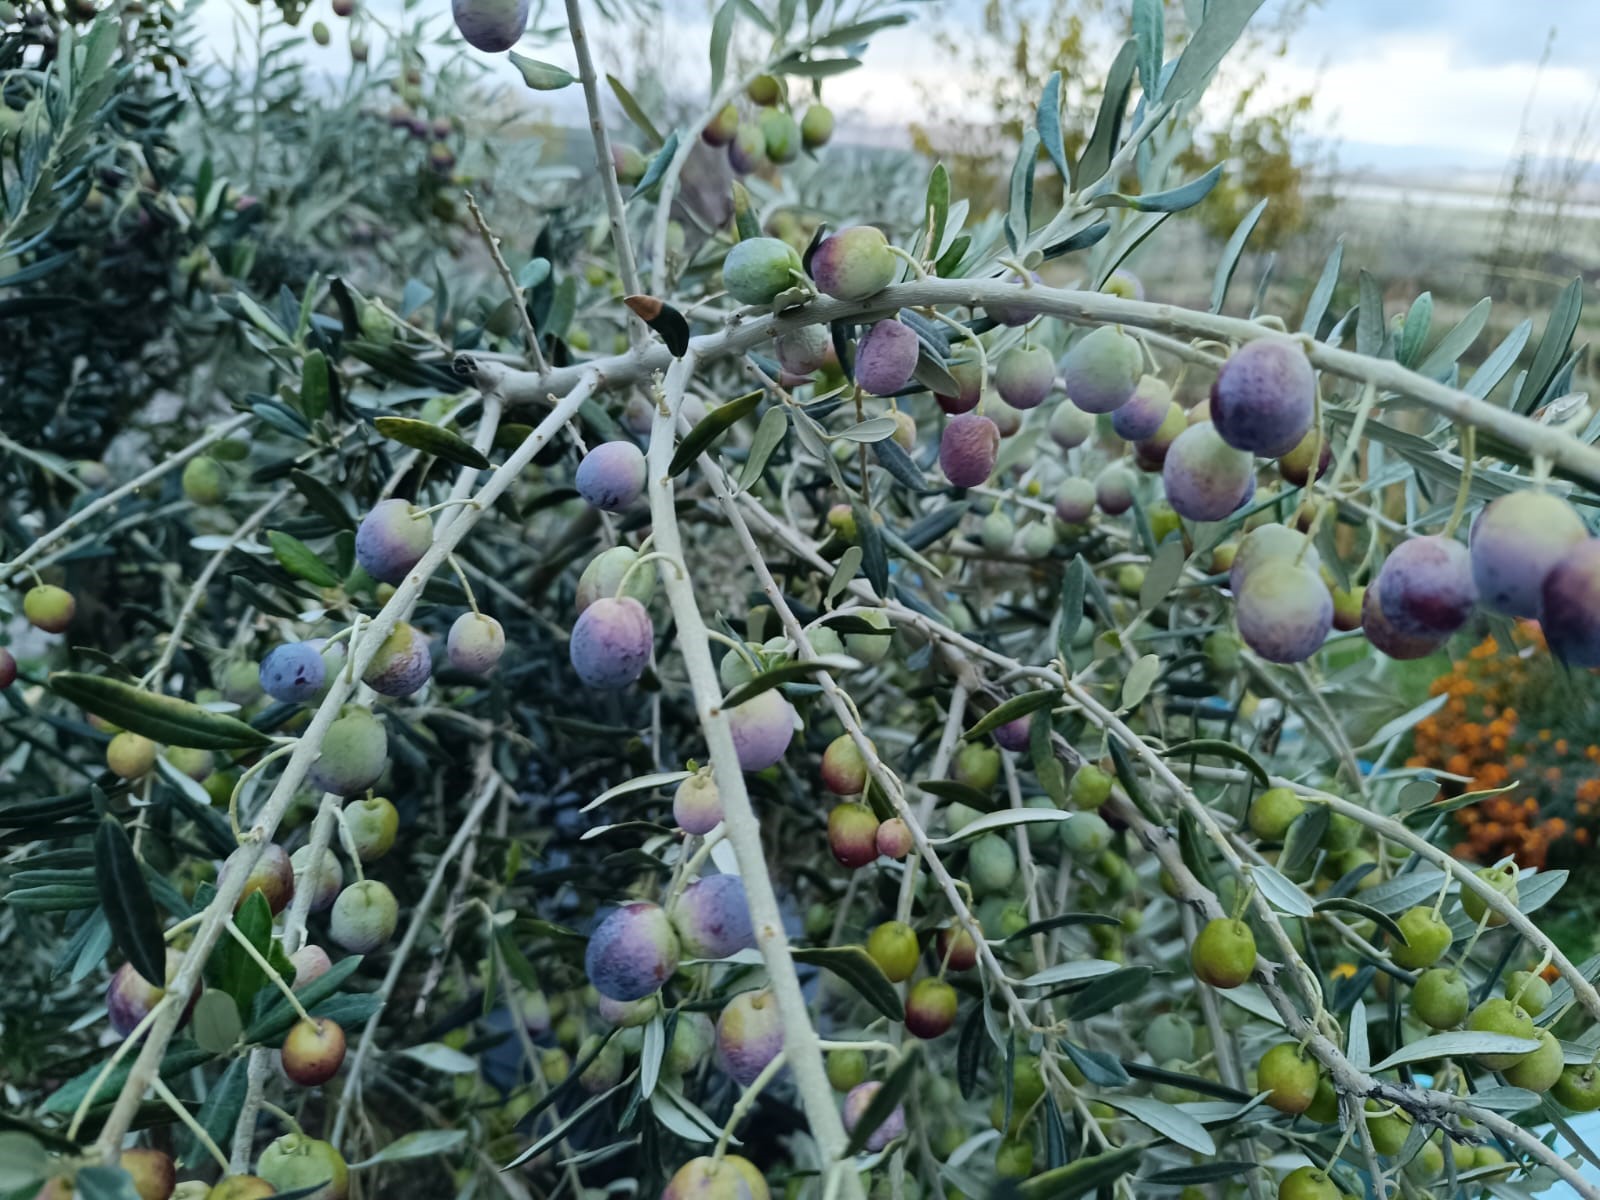 Tunceli'de deneme amaçlı ekilen zeytin ağacı ürün vermeye başladı